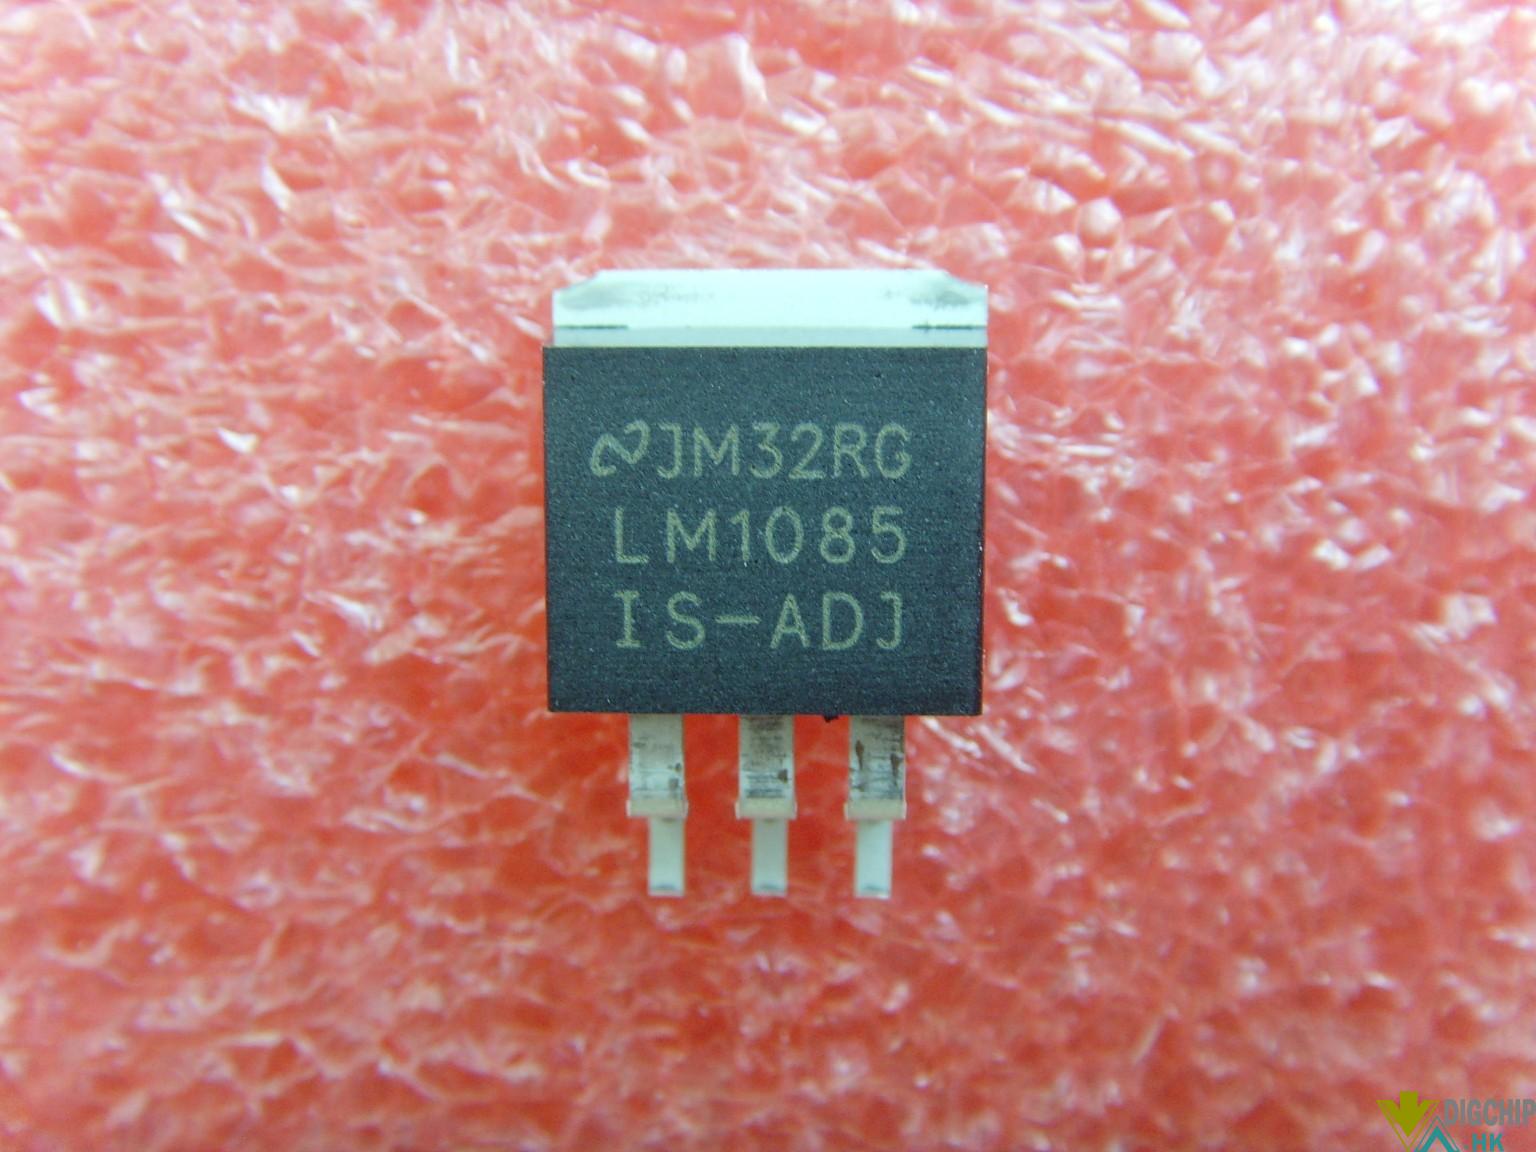 LM1085IS-ADJ